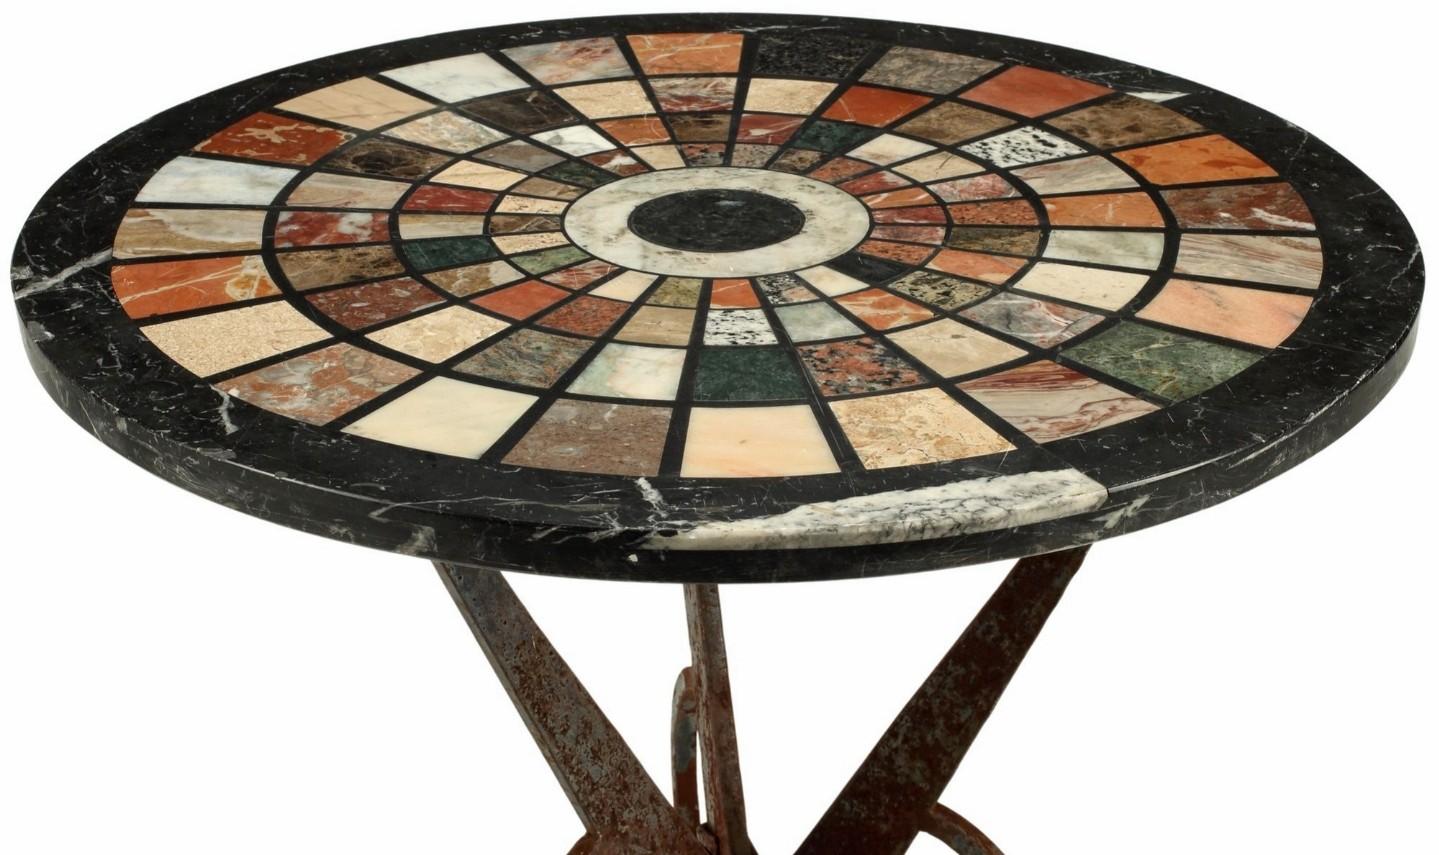 Ein optisch auffälliger schmiedeeiserner Tisch mit einer prächtigen runden Platte im Stil der italienischen Grand Tour Pietra dura aus dem 19. Mit 99 seltenen und exotischen, hochglanzpolierten Marmor- und Edelsteinmustern eingelegt, die in einem